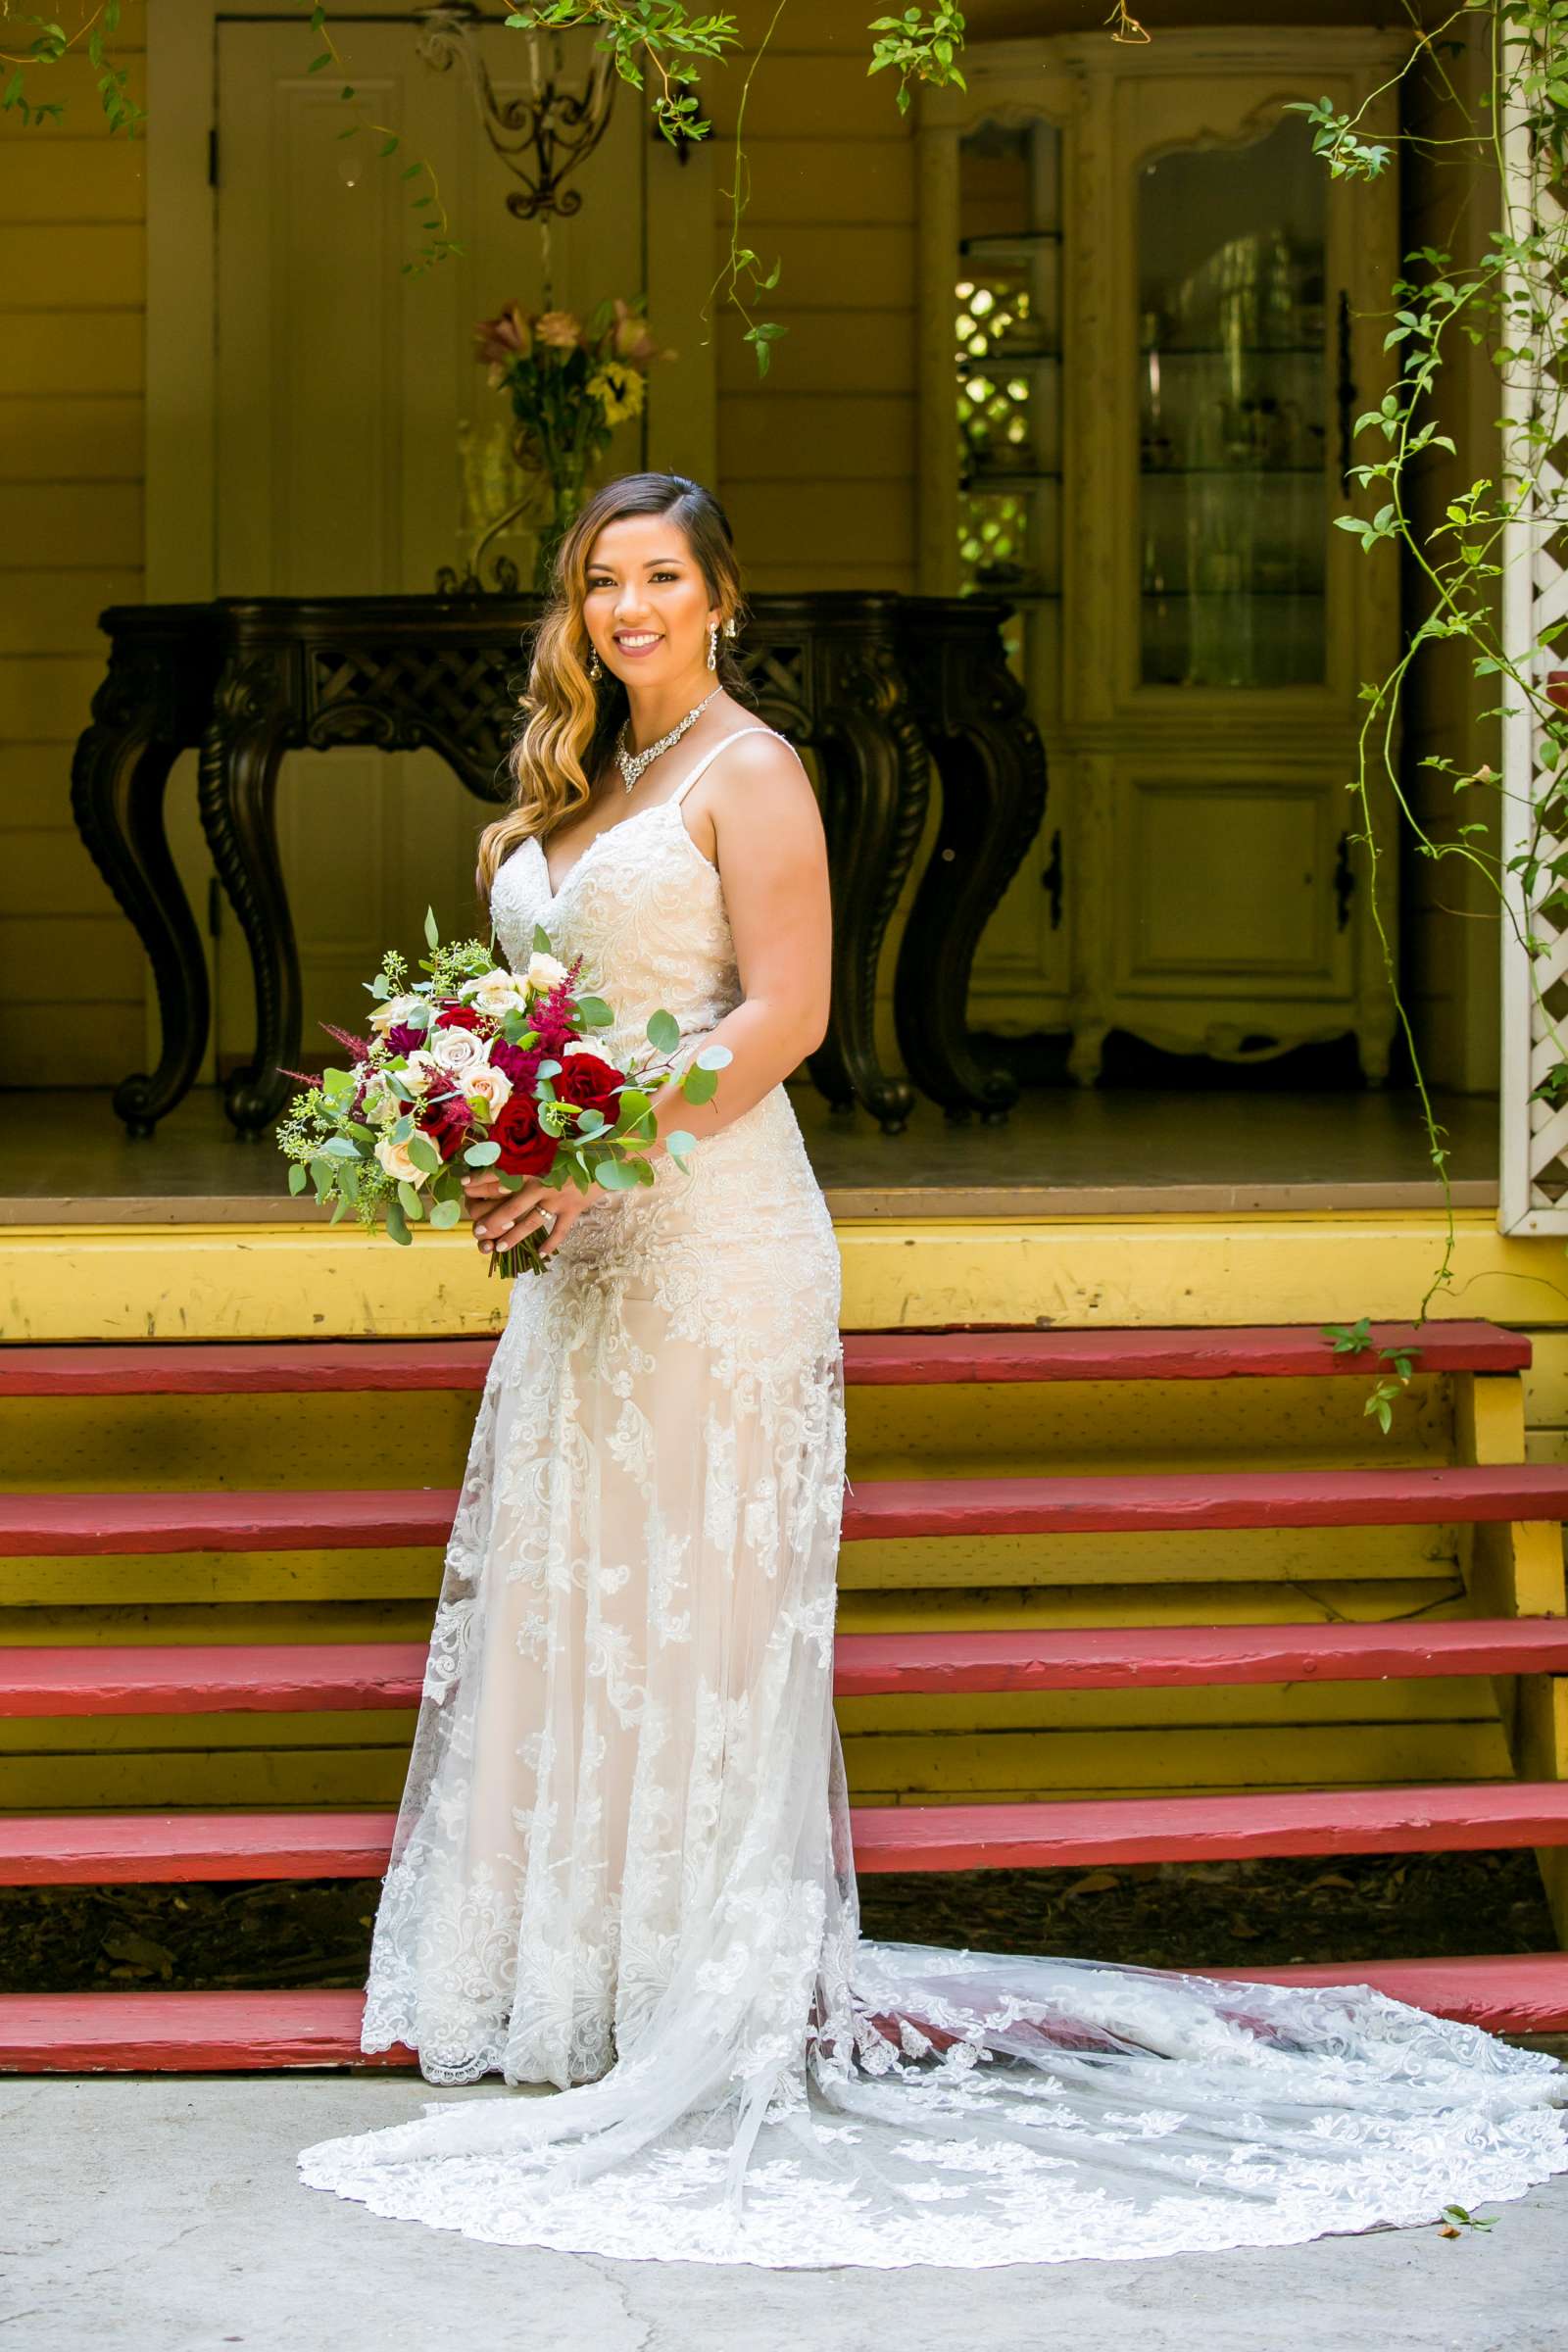 Twin Oaks House & Gardens Wedding Estate Wedding, Merrilynn and Trey Wedding Photo #50 by True Photography